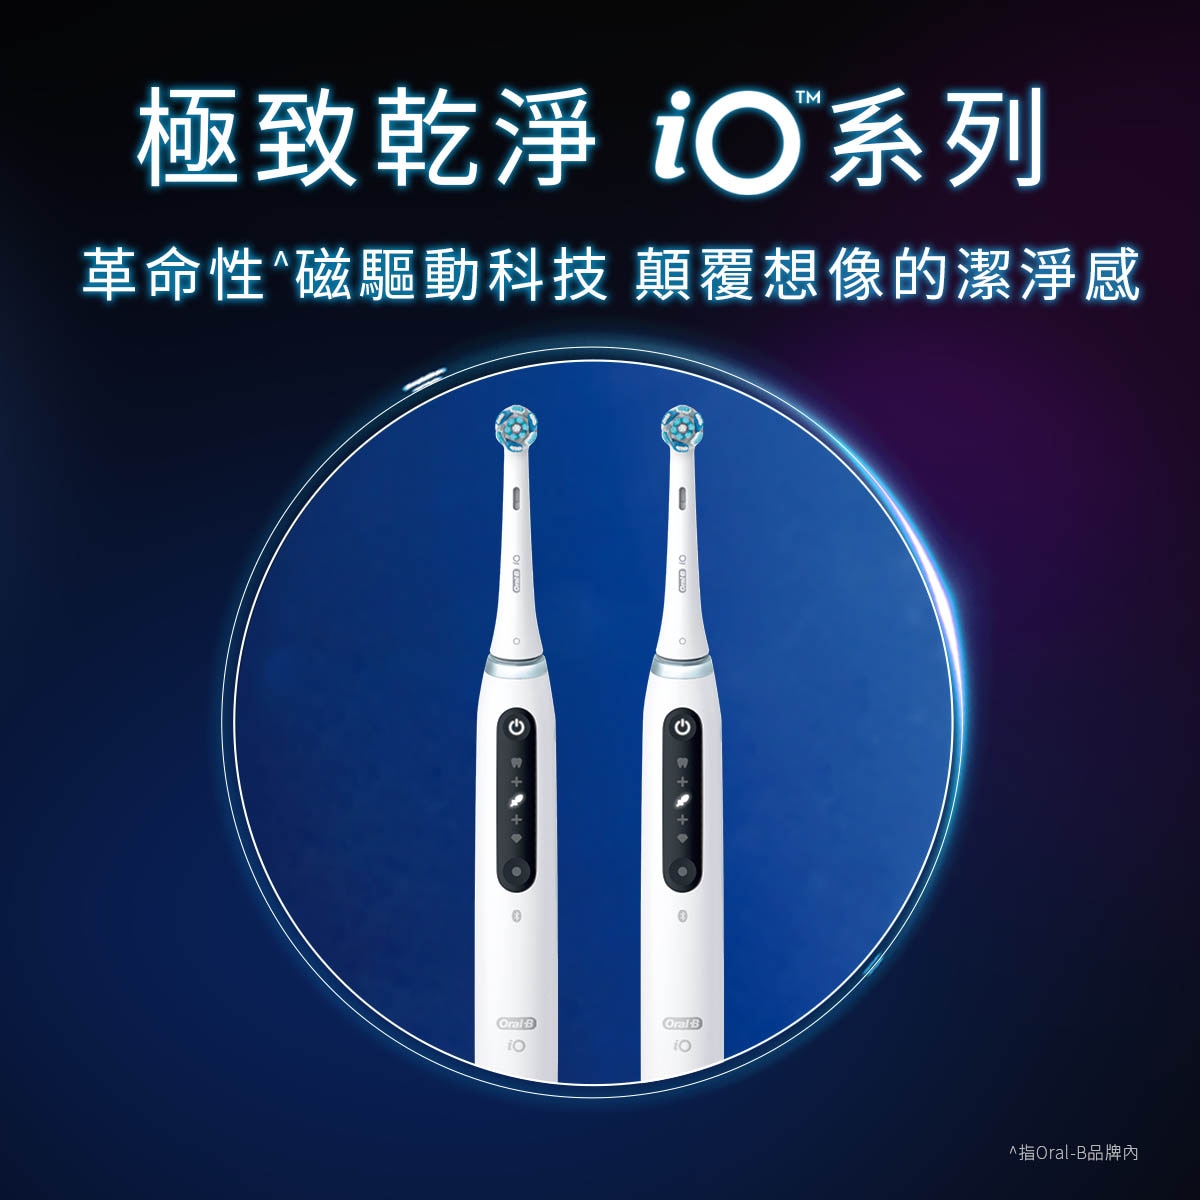 Oral-B 歐樂B頂規^iO系列革命性^磁驅動科技，實現專業級洗牙般潔淨感。